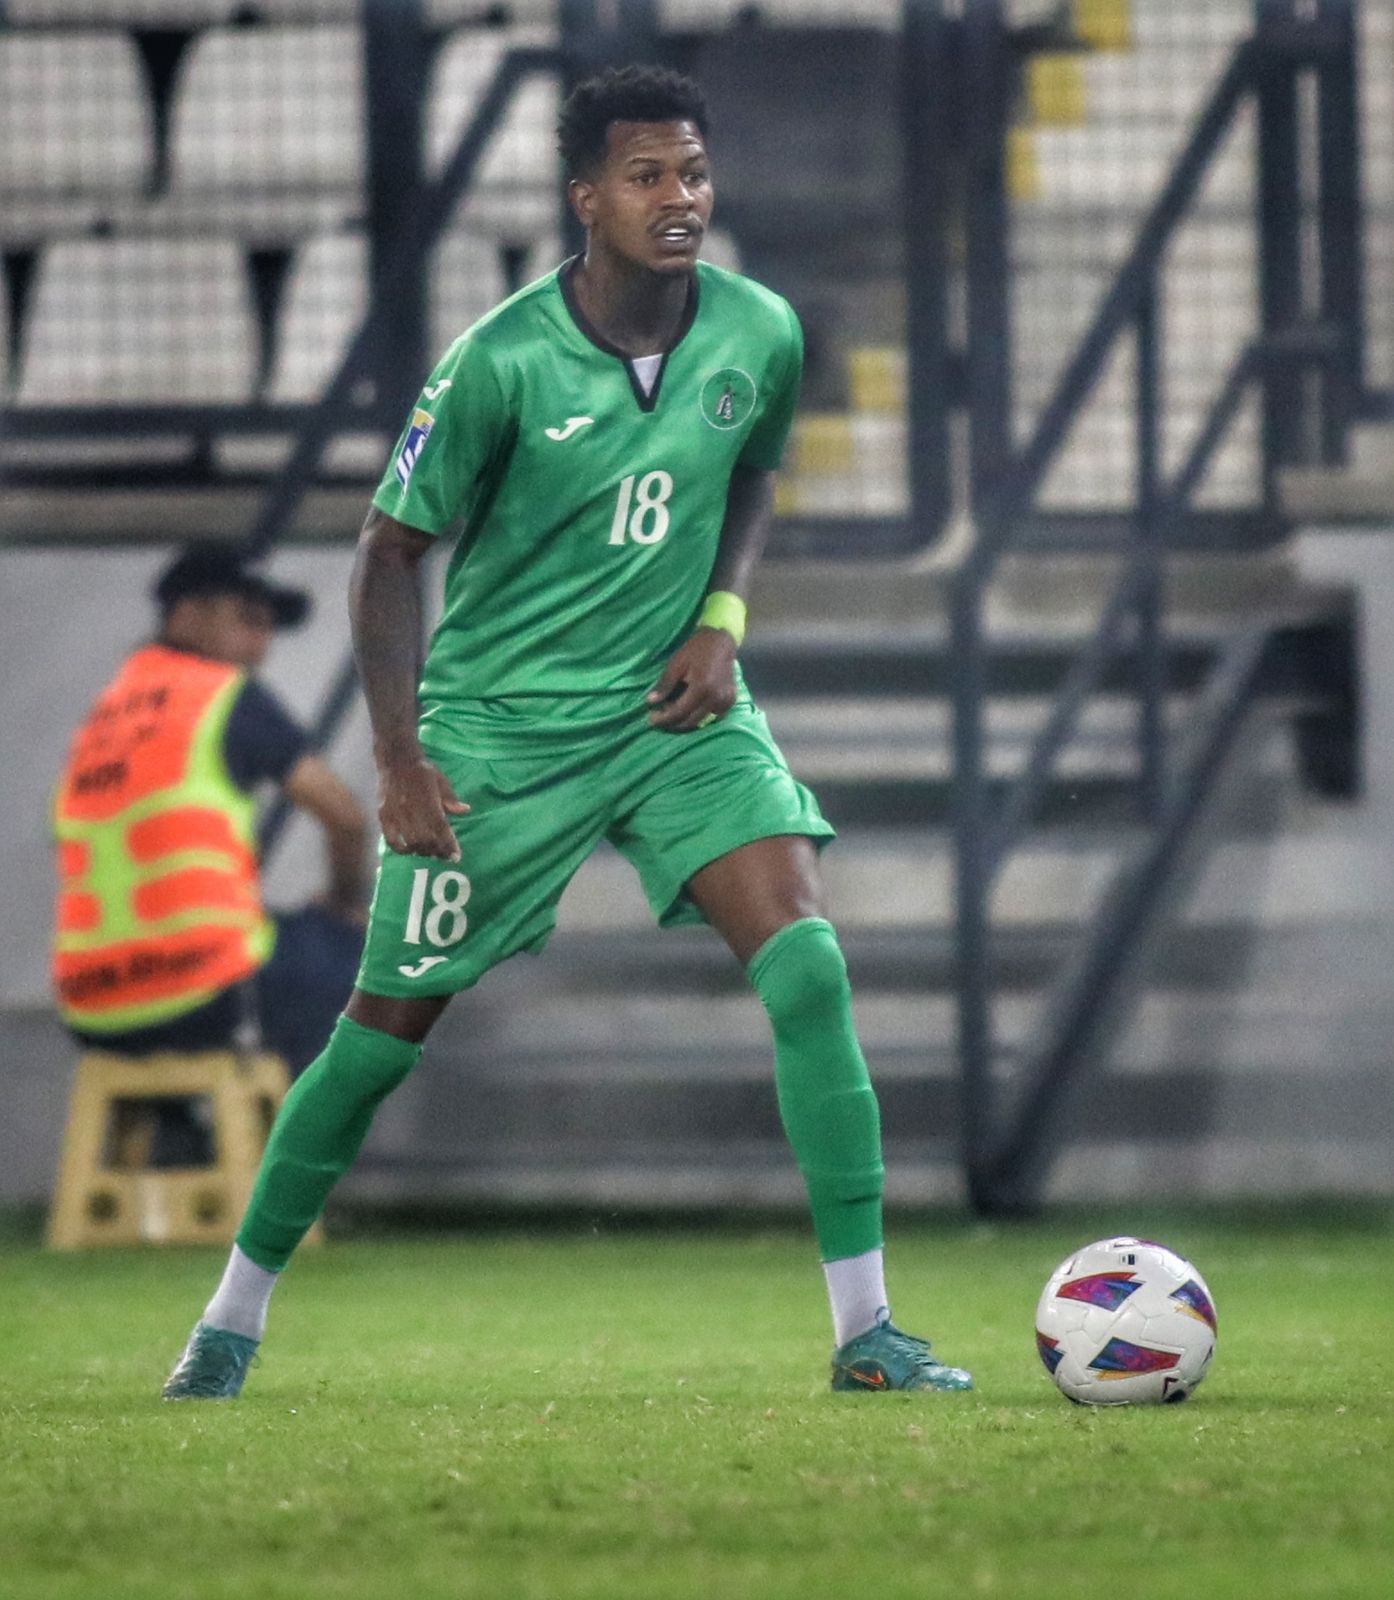 Ex-Porto, capixaba Emerson Souza inicia nova trajetória no futebol internacional: ‘Animado’